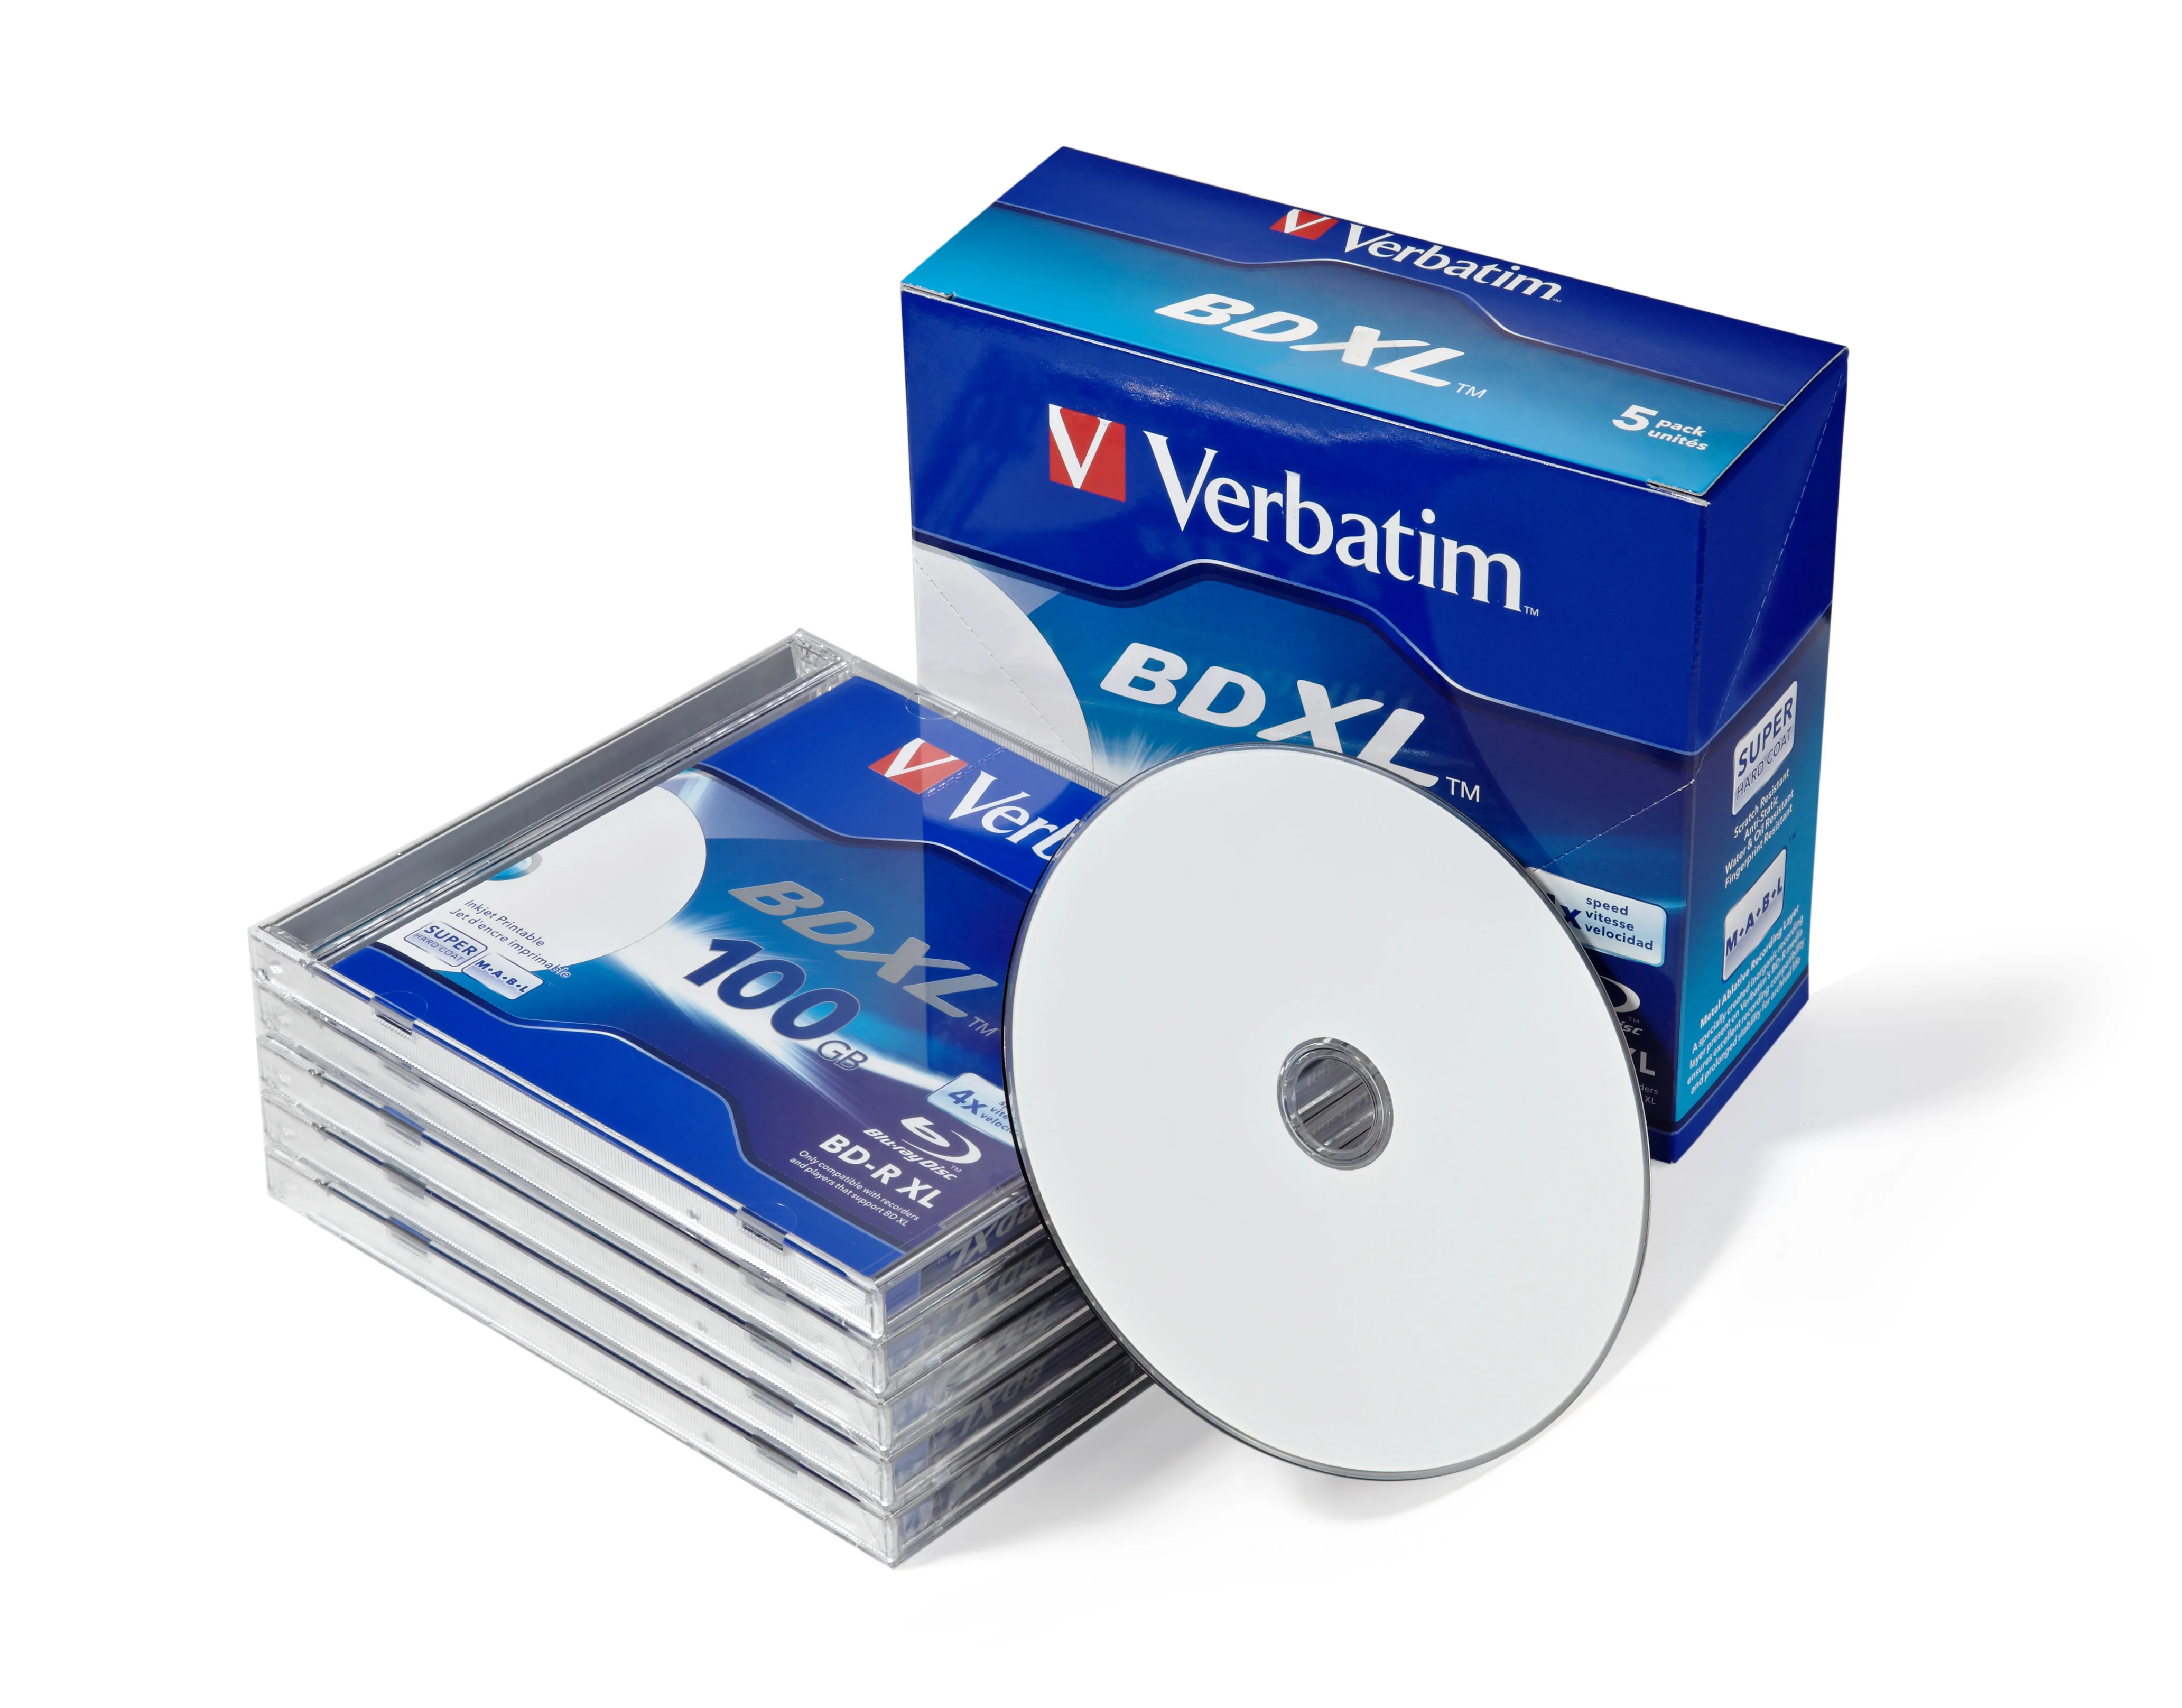 Blue Ray Disc BD-R XL 100GB Triple Layer Bluray DVD BDR 100g  4X 5Pcs/Pack